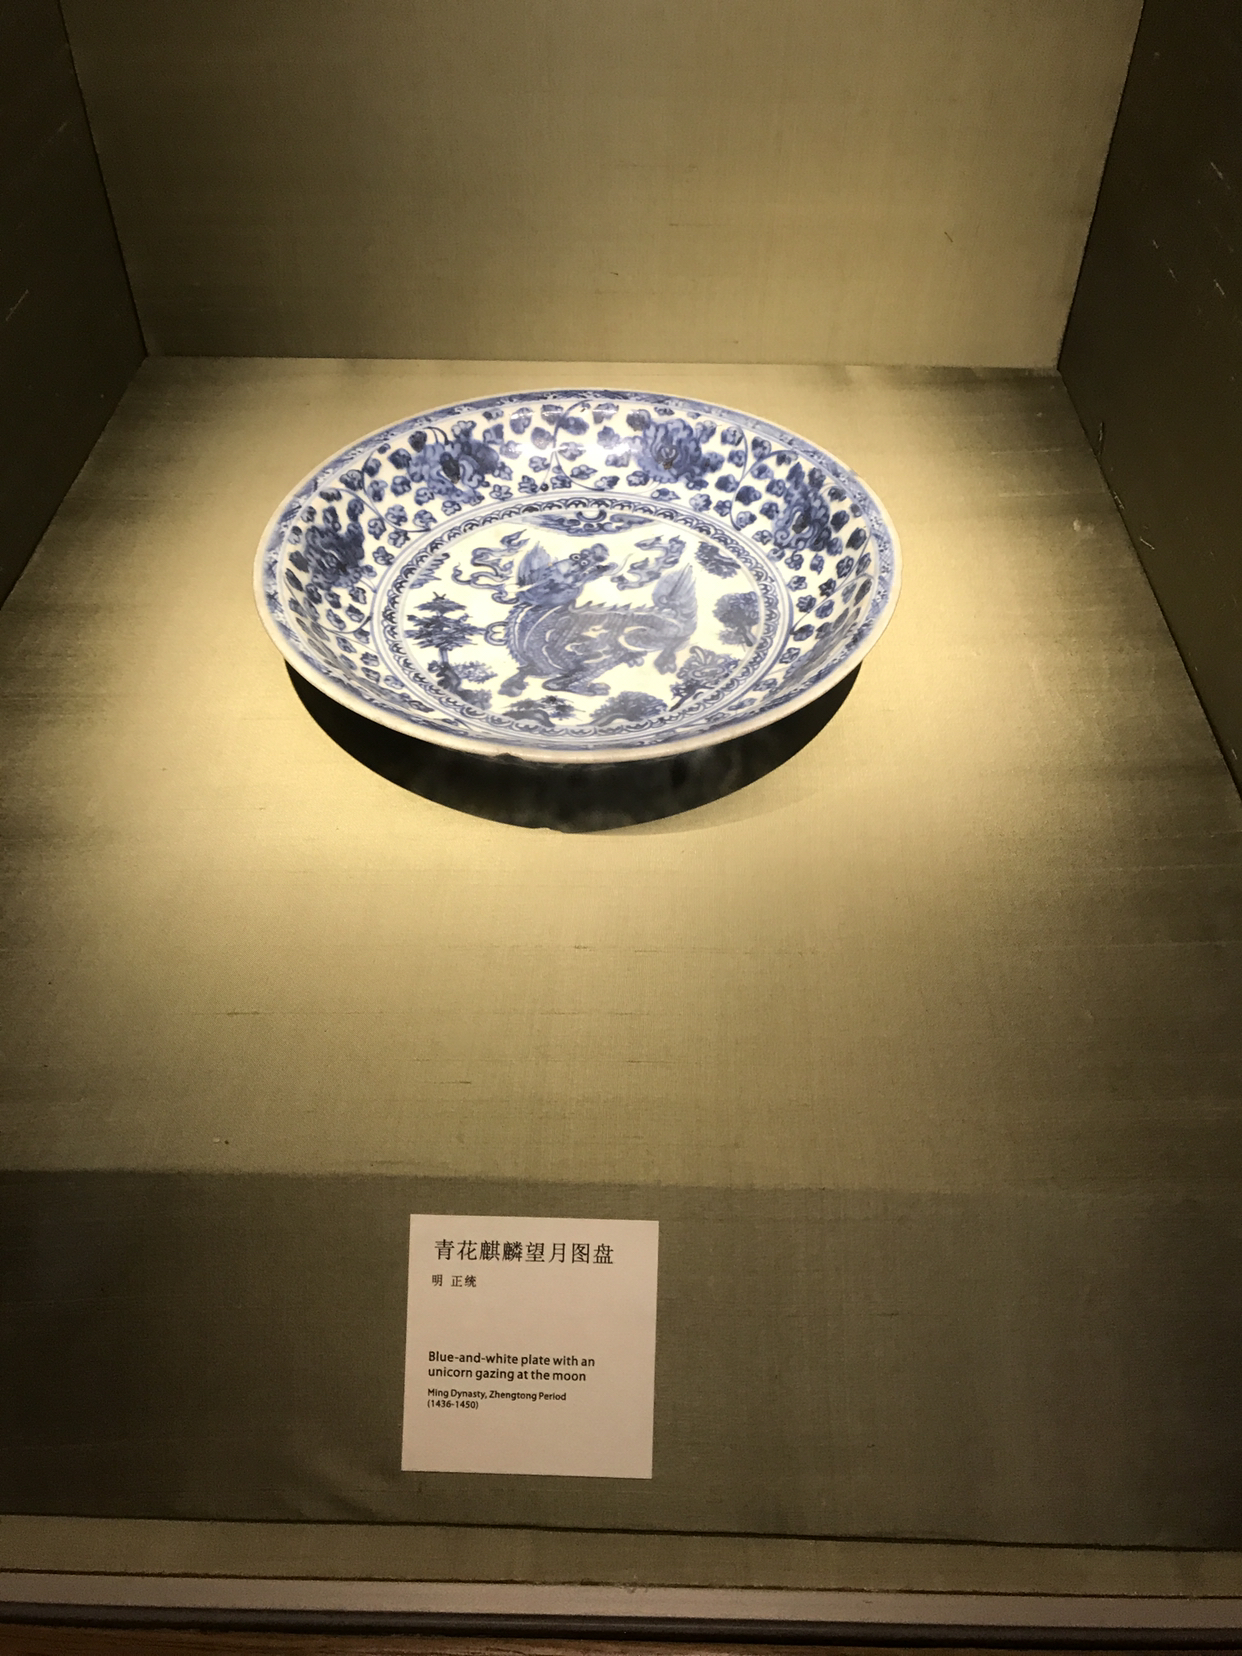 苏州博物馆不同时代的瓷器